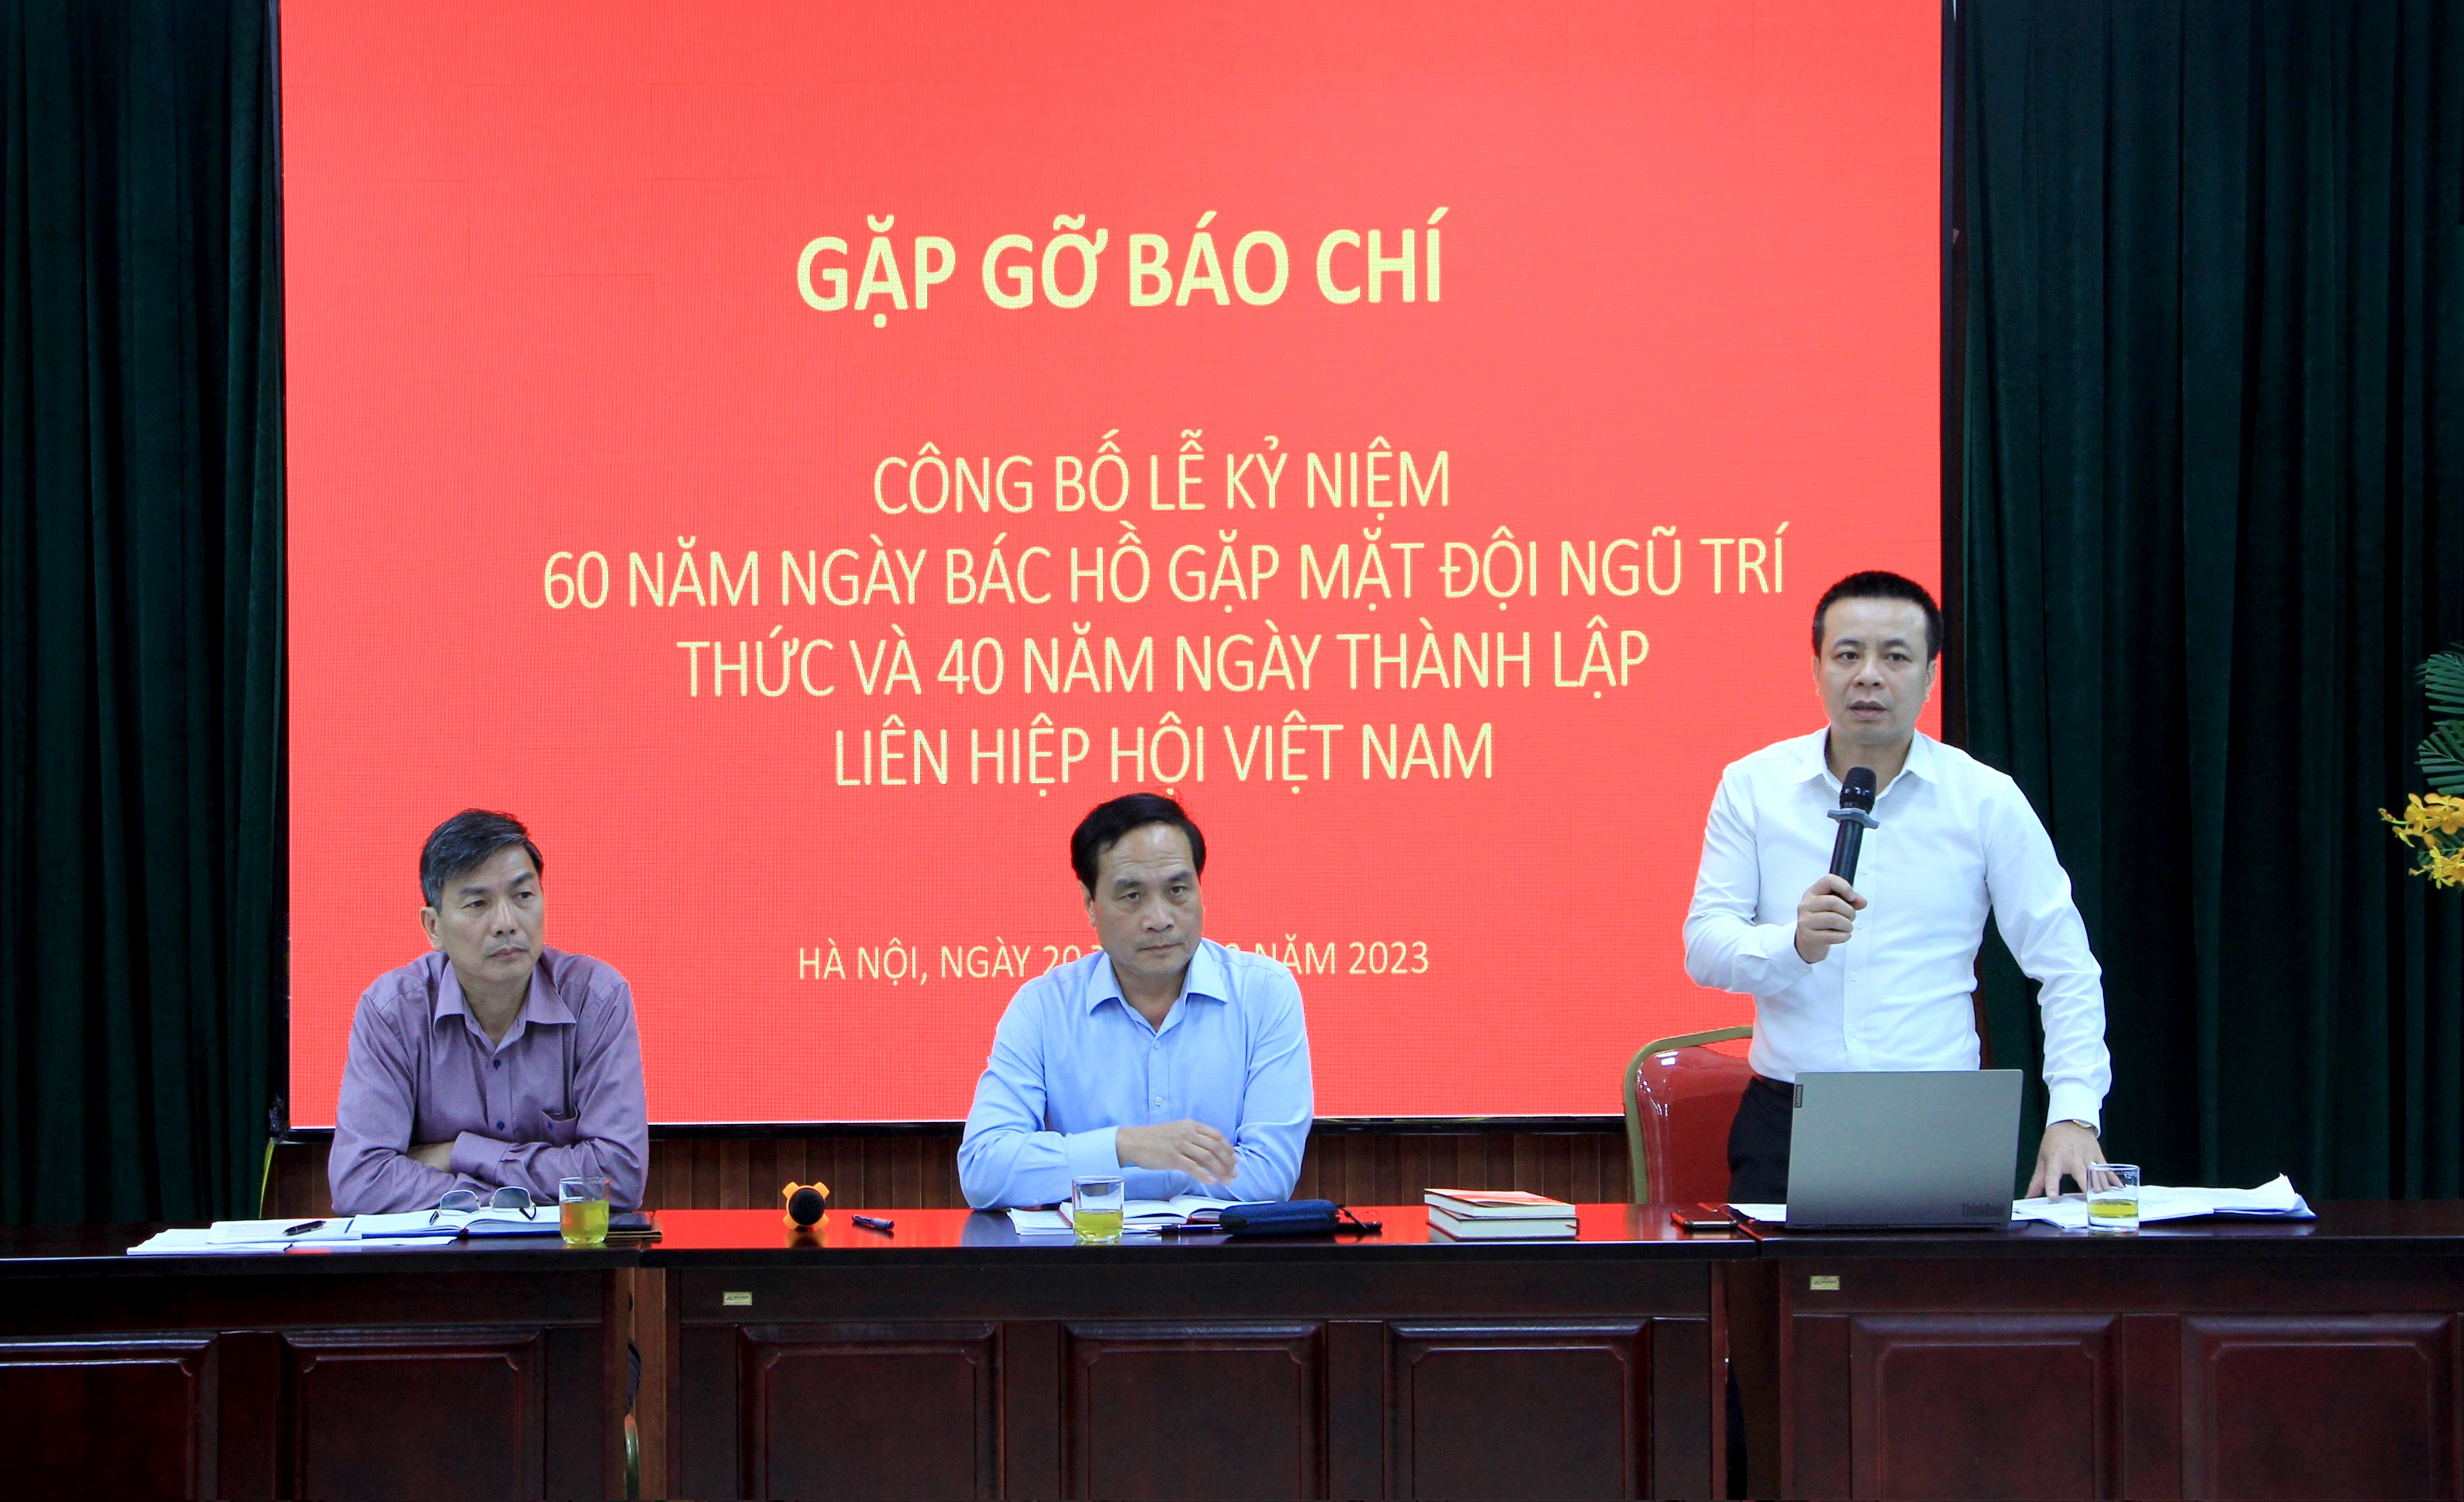 Liên hiệp các Hội Khoa học và Kỹ thuật Việt Nam ngày càng khẳng định vị trí, vai trò của đội ngũ trí thức trong quá trình xây dựng và phát triển đất nước.